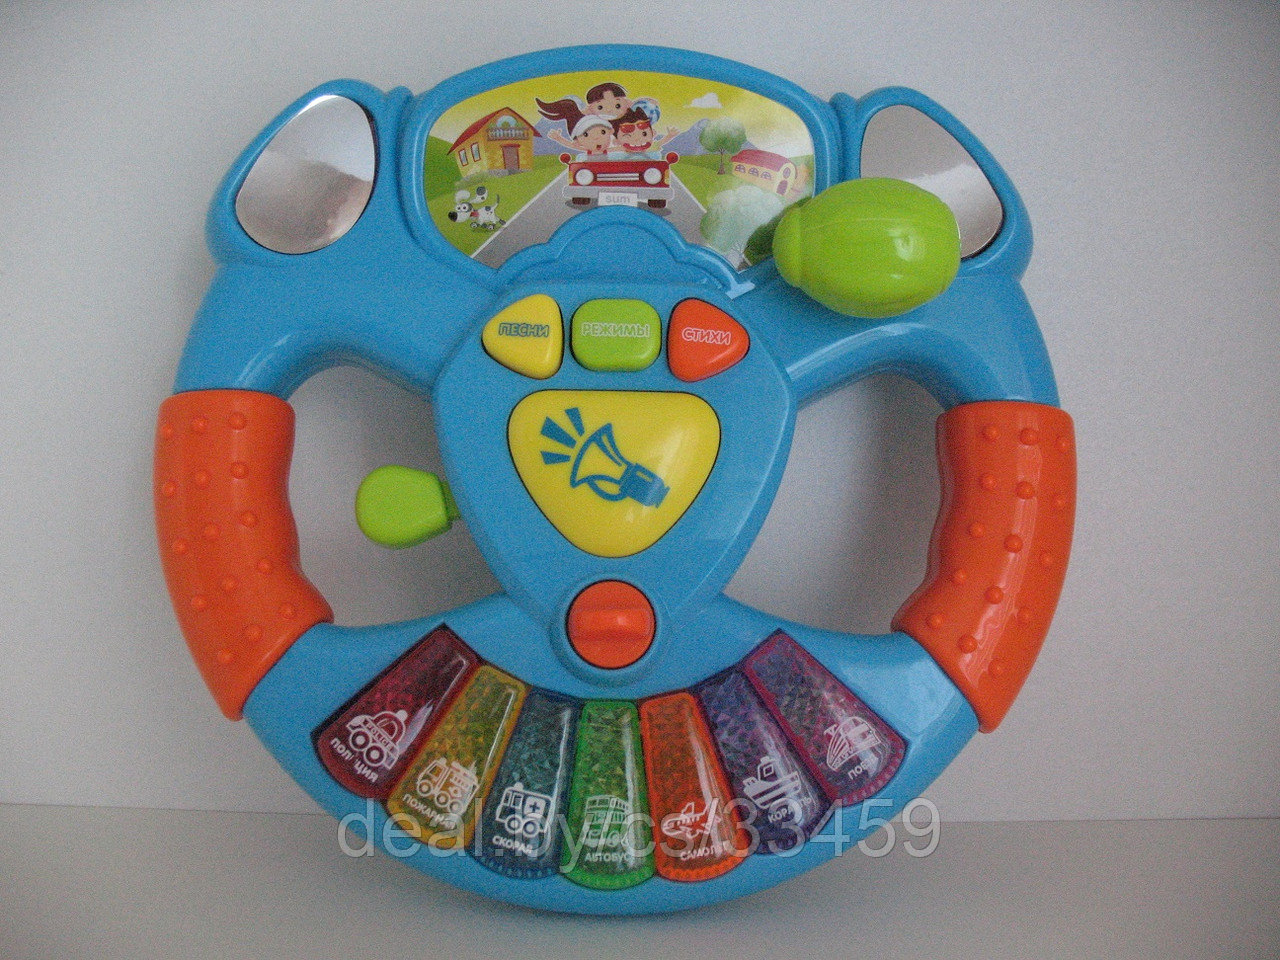 Развивающая игрушка «Музыкальный руль» Play smart. Для детей от 1 года.